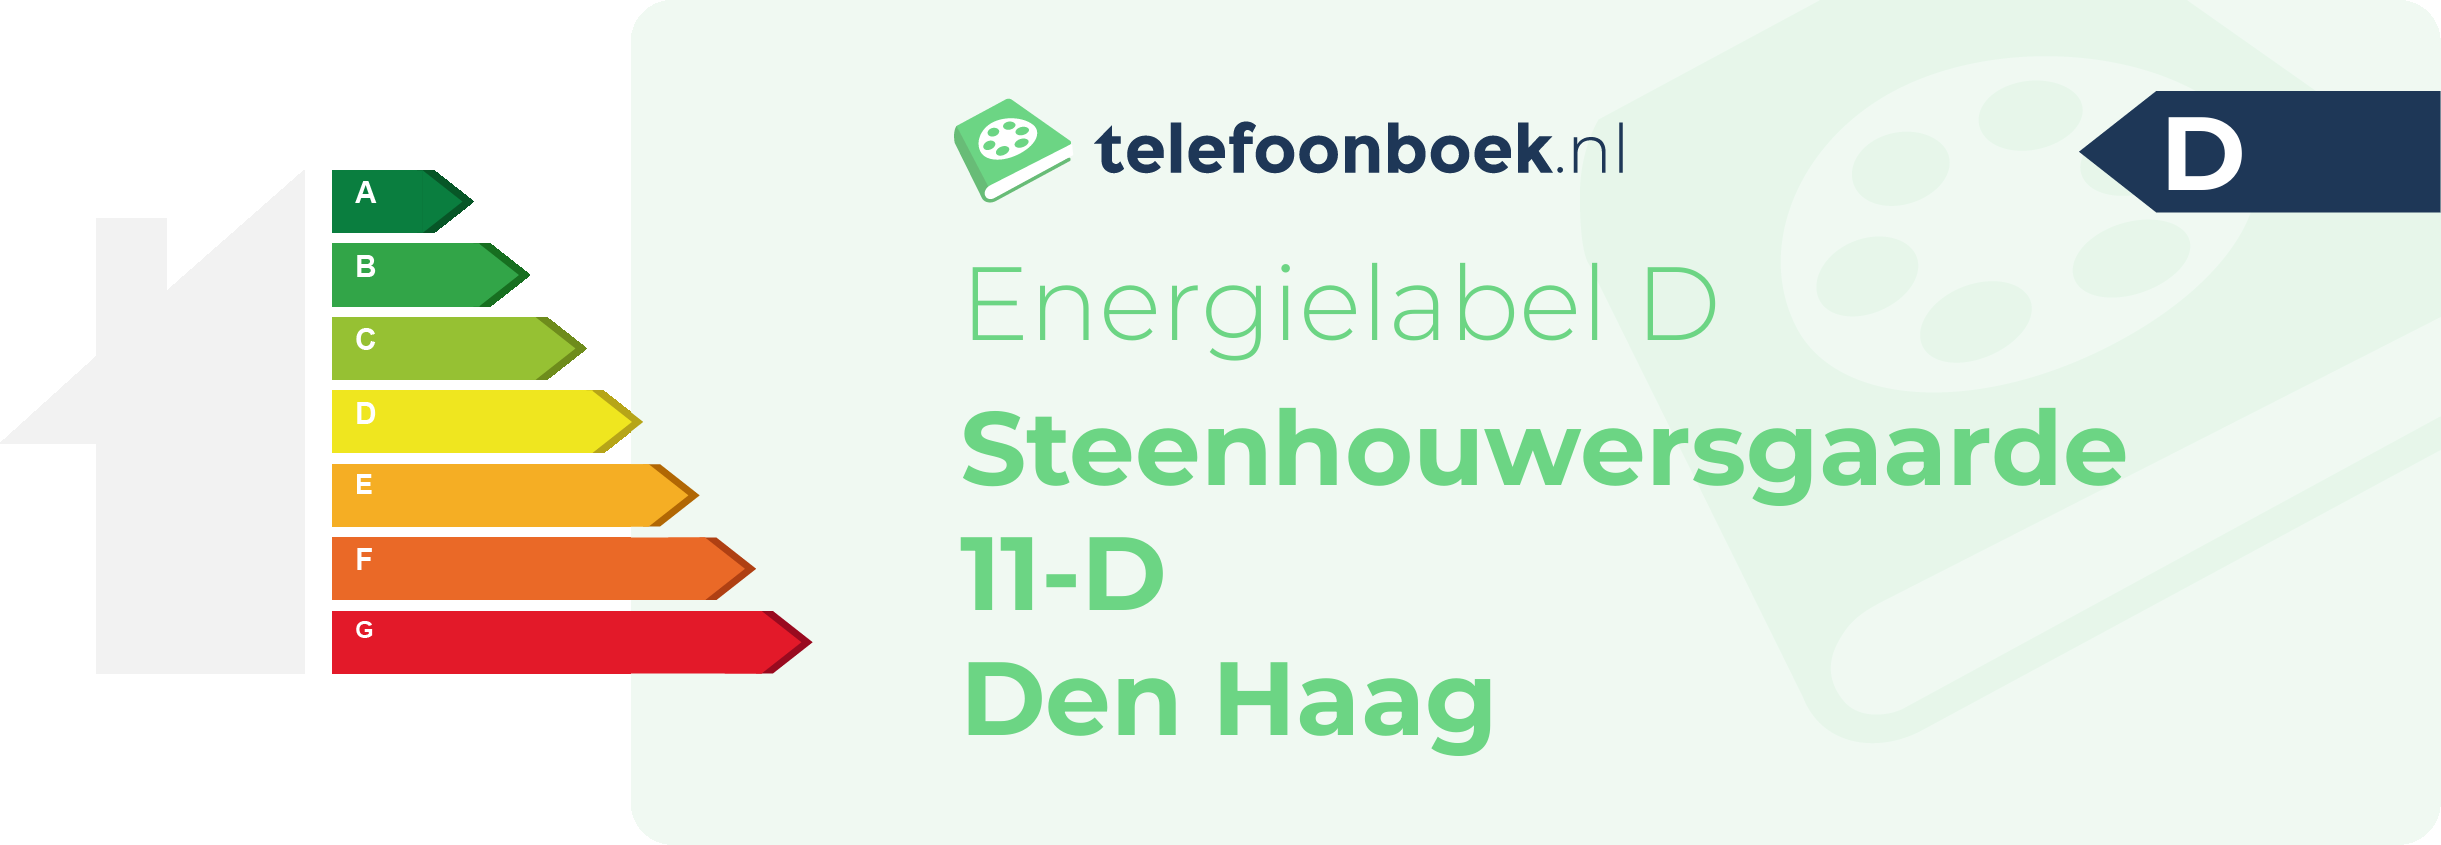 Energielabel Steenhouwersgaarde 11-D Den Haag